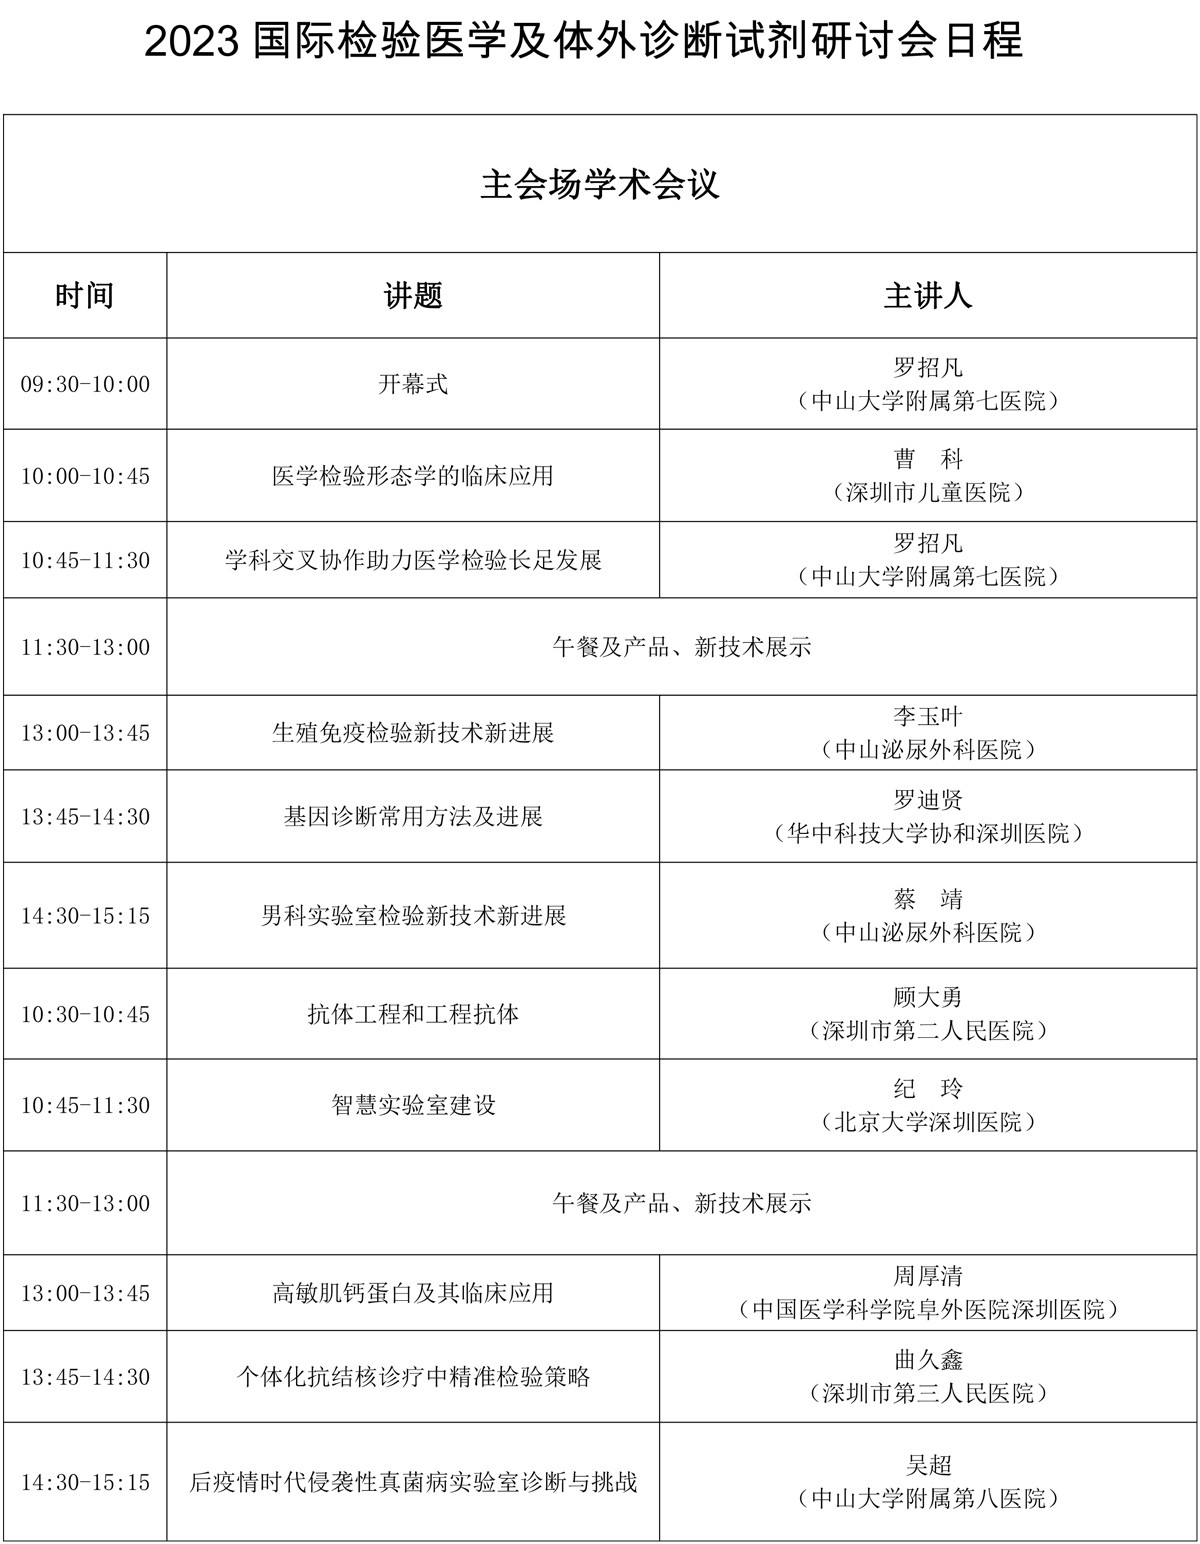 上海医疗展日程安排